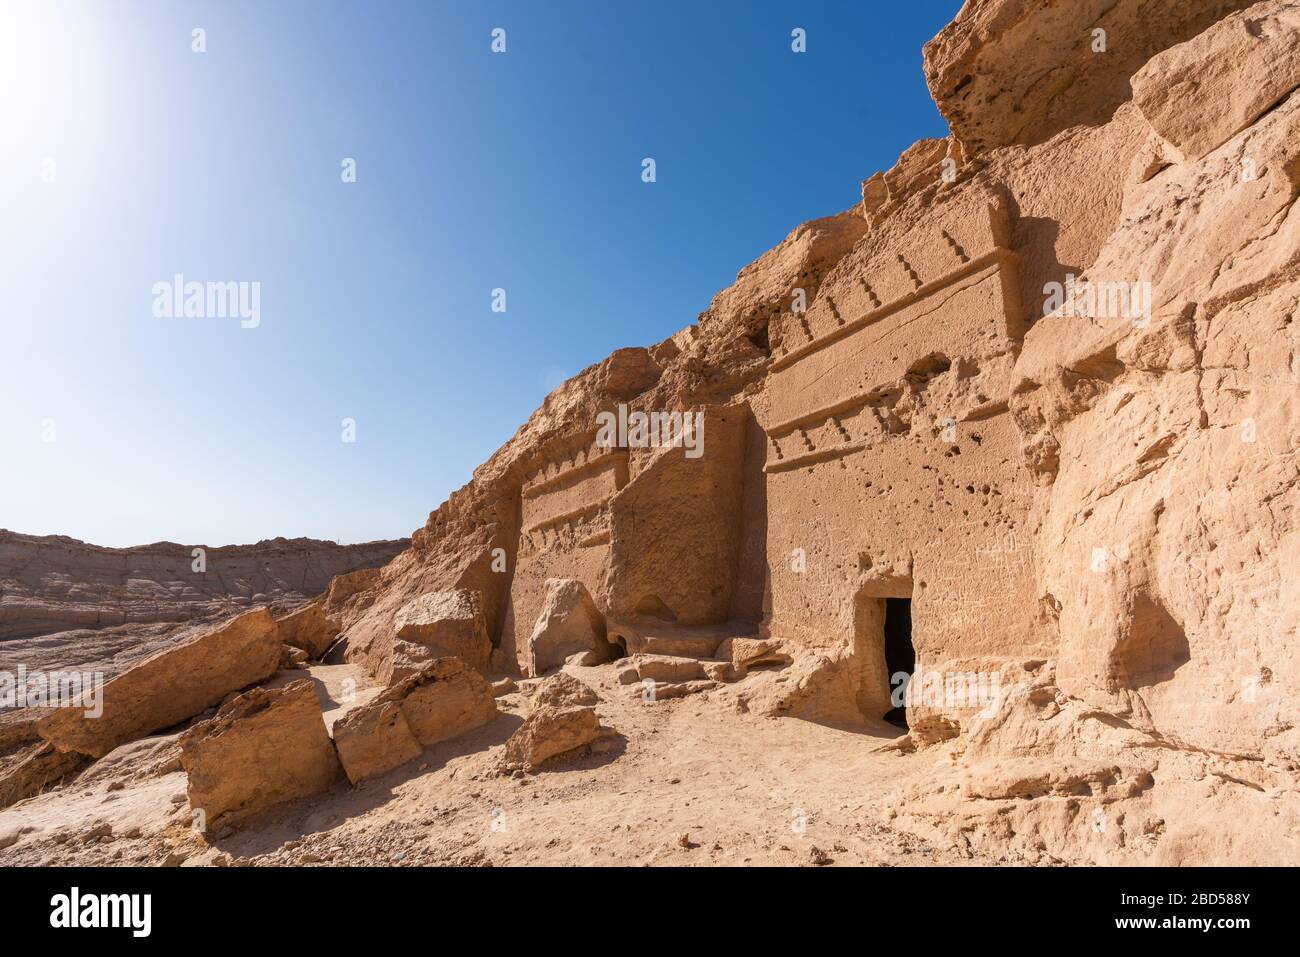 Tumbas Nabateas históricas en al Bad', Arabia Saudita Foto de stock